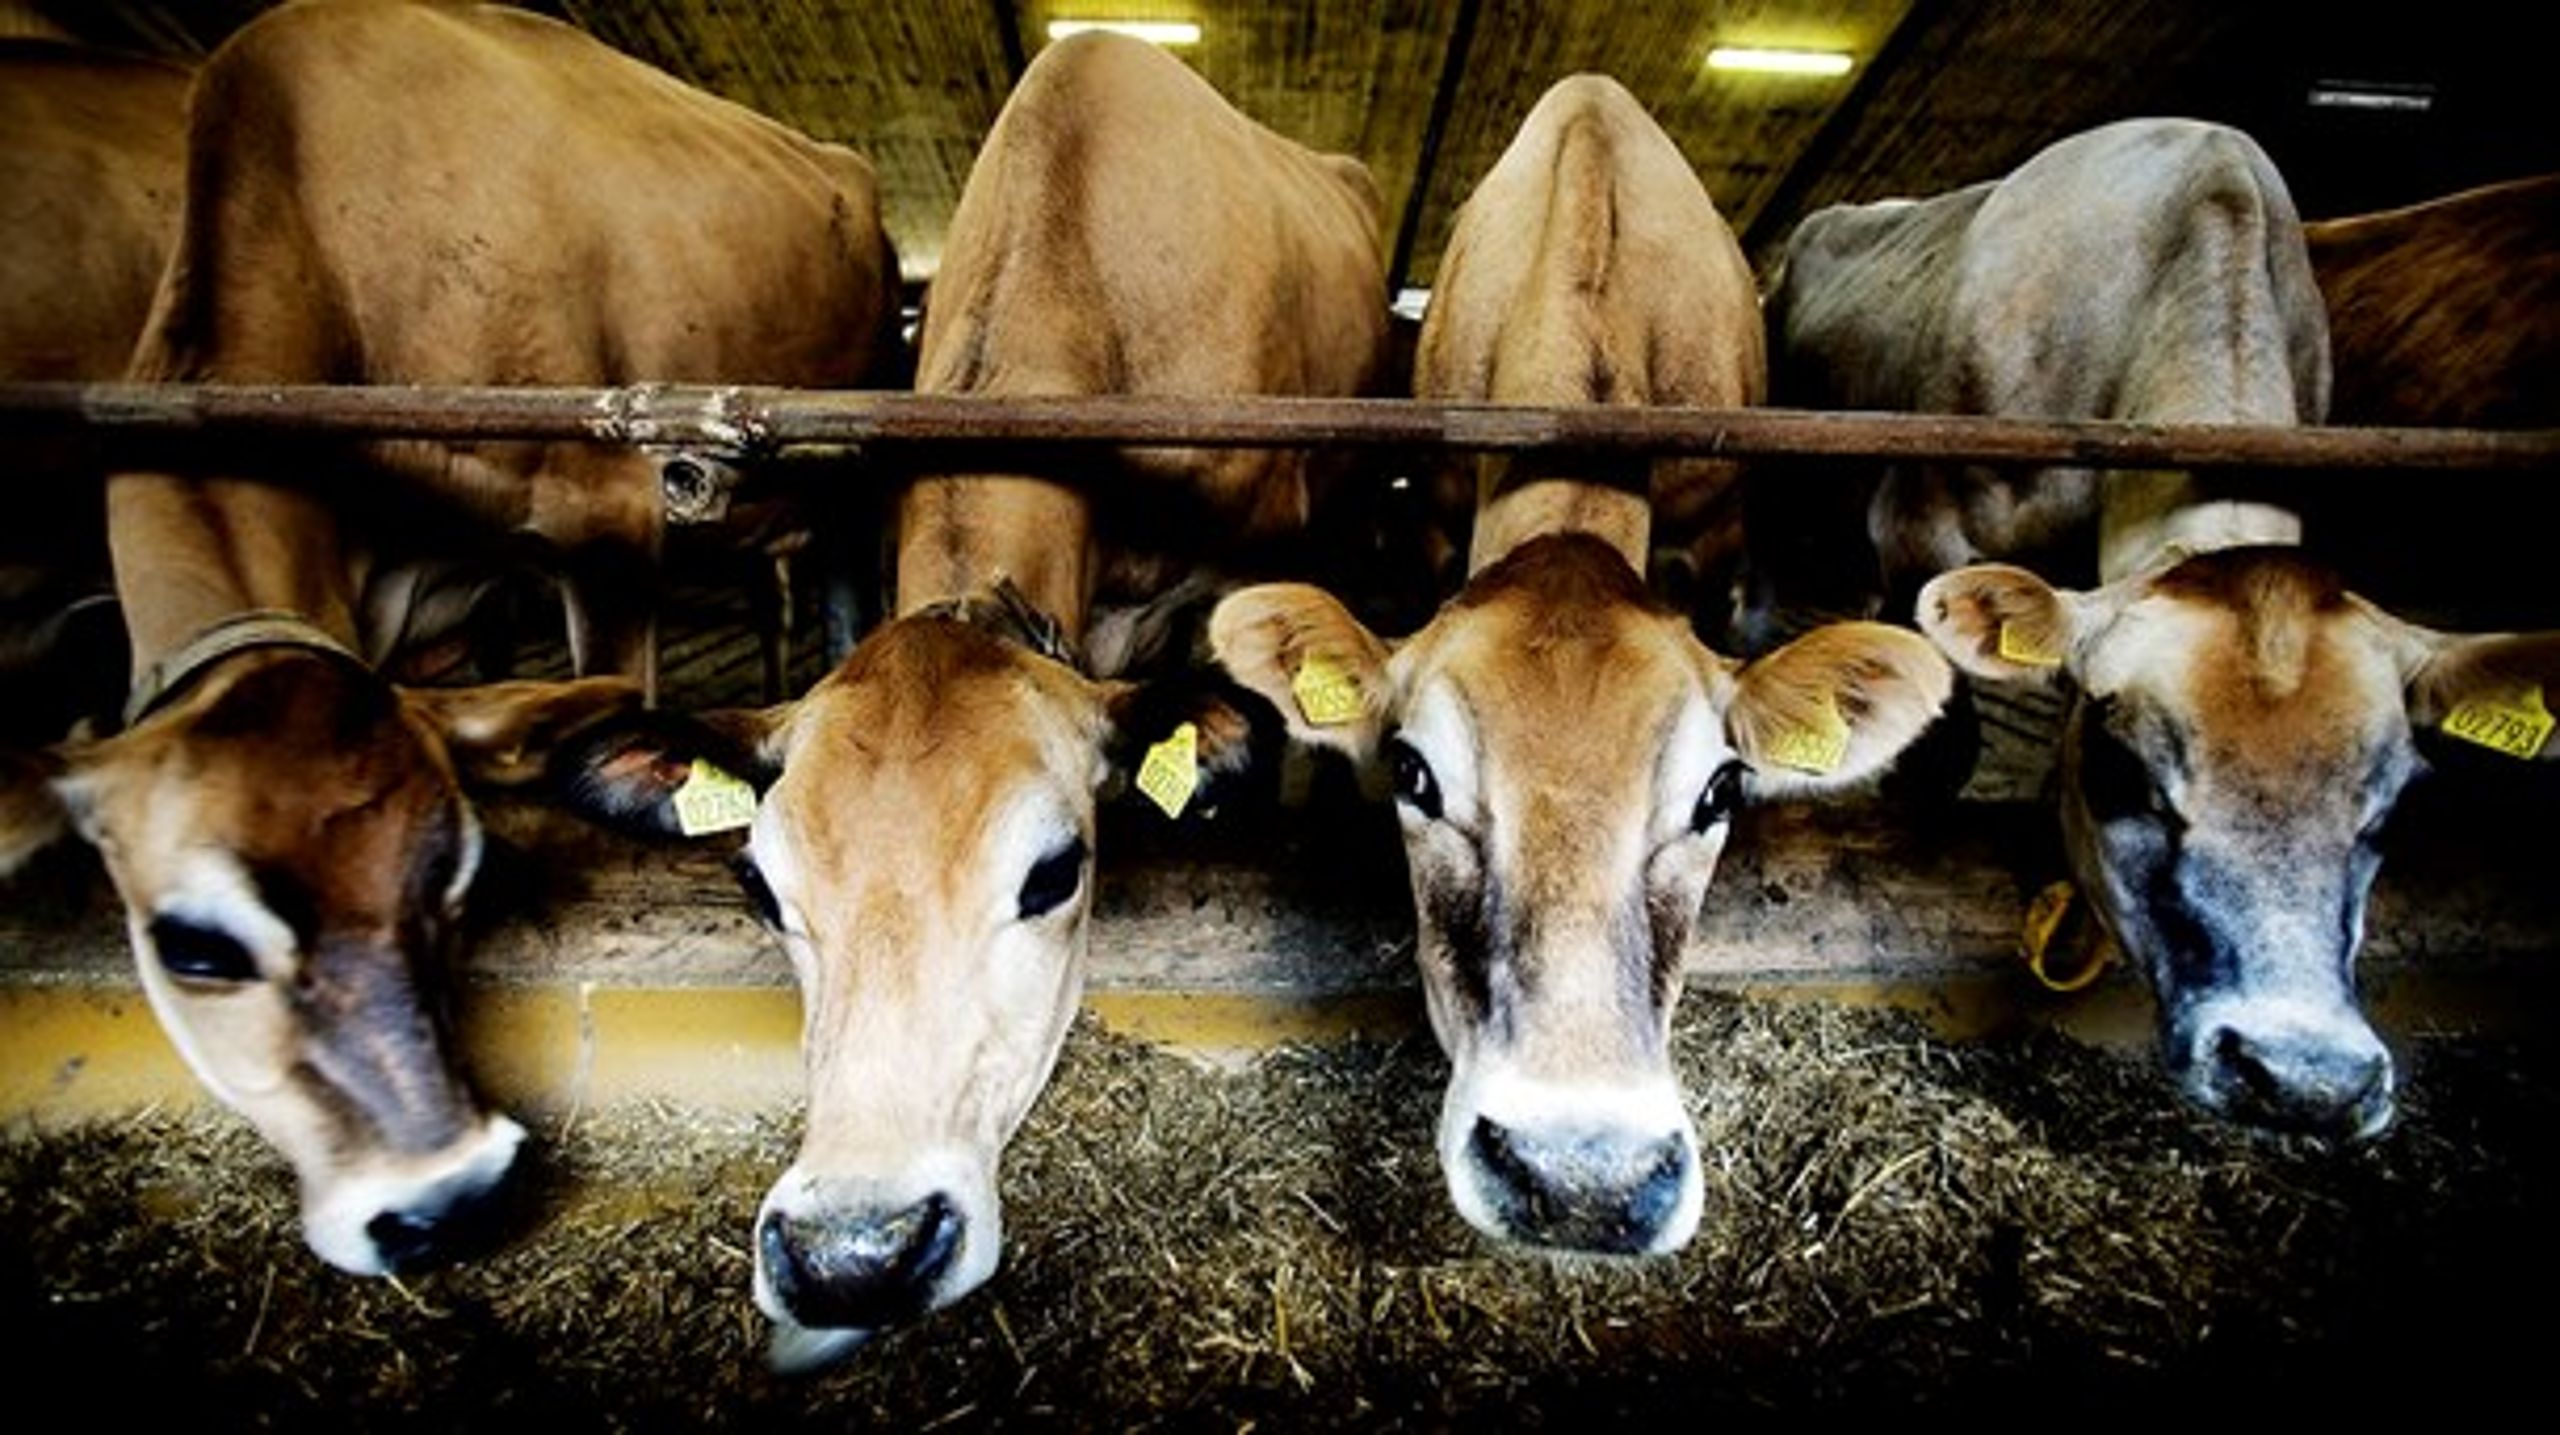 Vismændenes forslag vil især ramme kvæg- og mælkeproduktionen, men samlet vil det give en samfundsøkonomisk gevinst. Og reducere CO2-udledningen med i omegnen af 0,8 millioner ton drivhusgas, skriver vismændene. Oppositionspartierne er ikke overbevist.